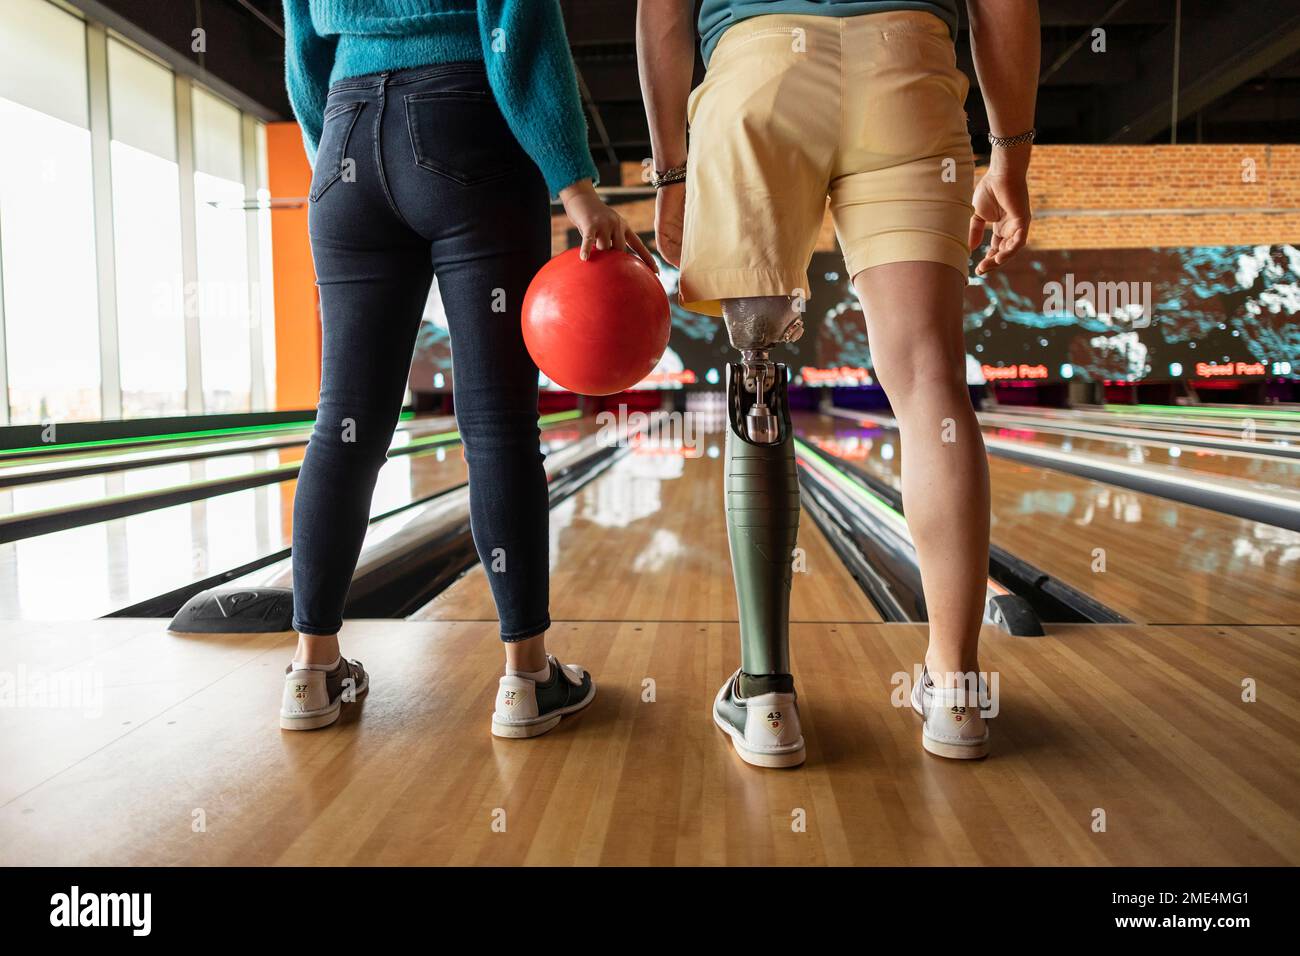 Une femme tenant une balle avec un ami portant un membre artificiel debout sur un sol en bois dur dans une piste de bowling Banque D'Images